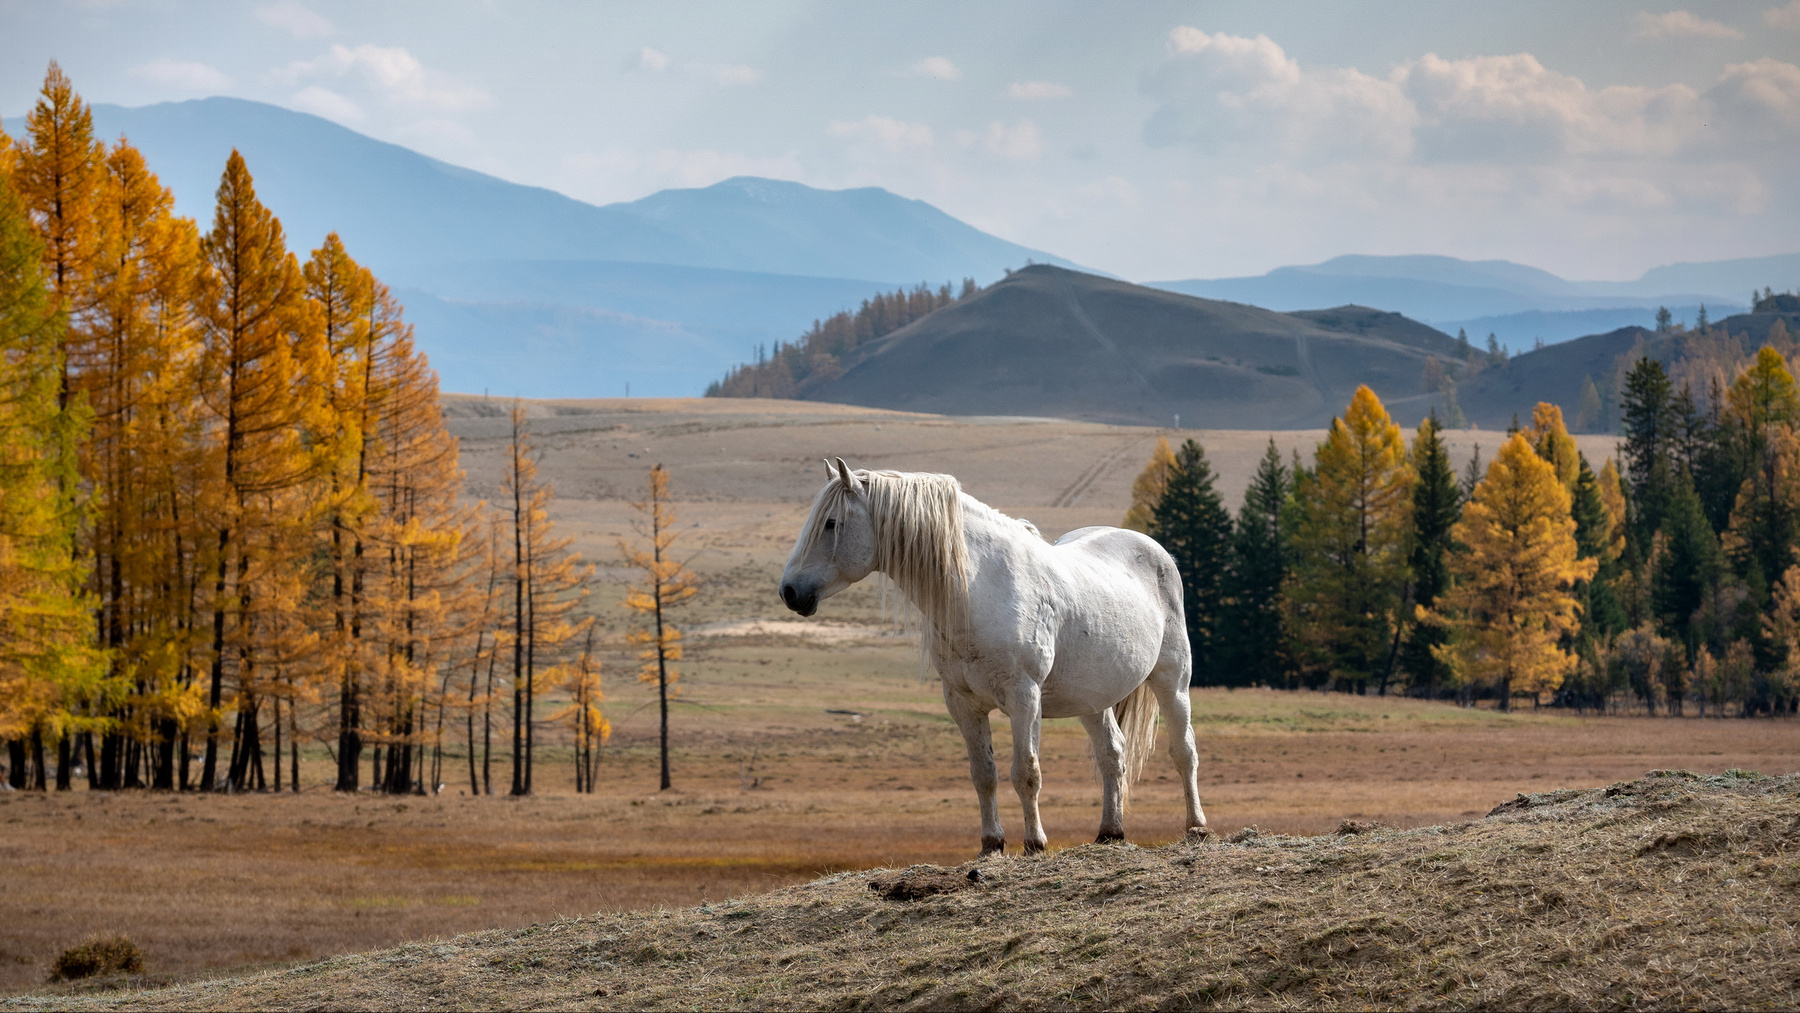 Вожак. горы алтай горный солнце белый конь лошадь животные красота ник васильев осень золотая